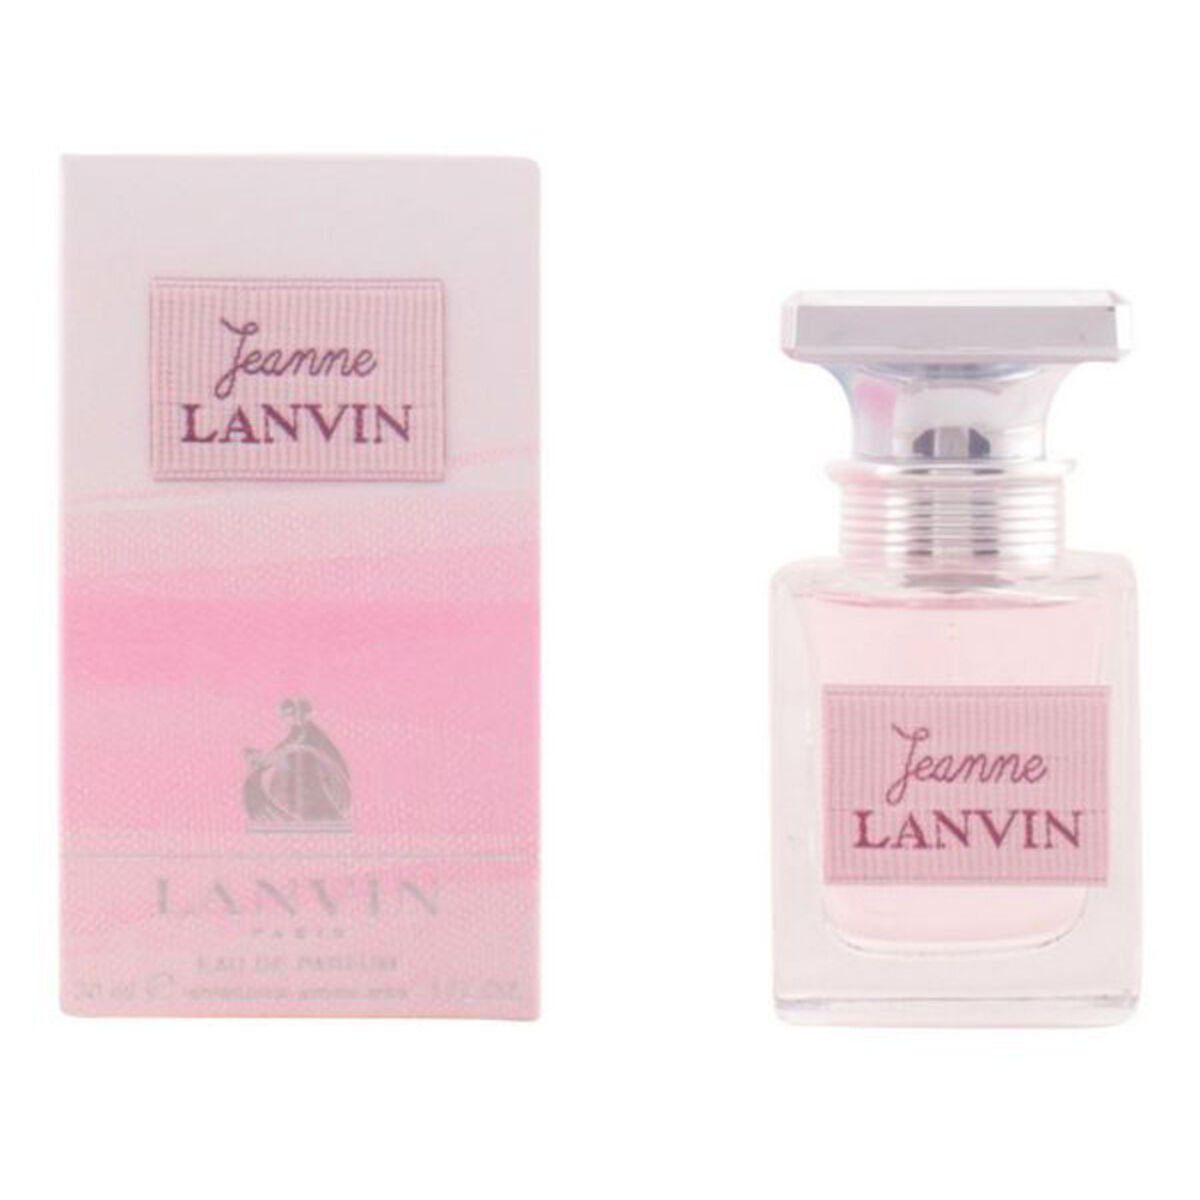 Toilette Parfum de LANVIN Lanvin Damenparfüm Eau 10001356 Eau de